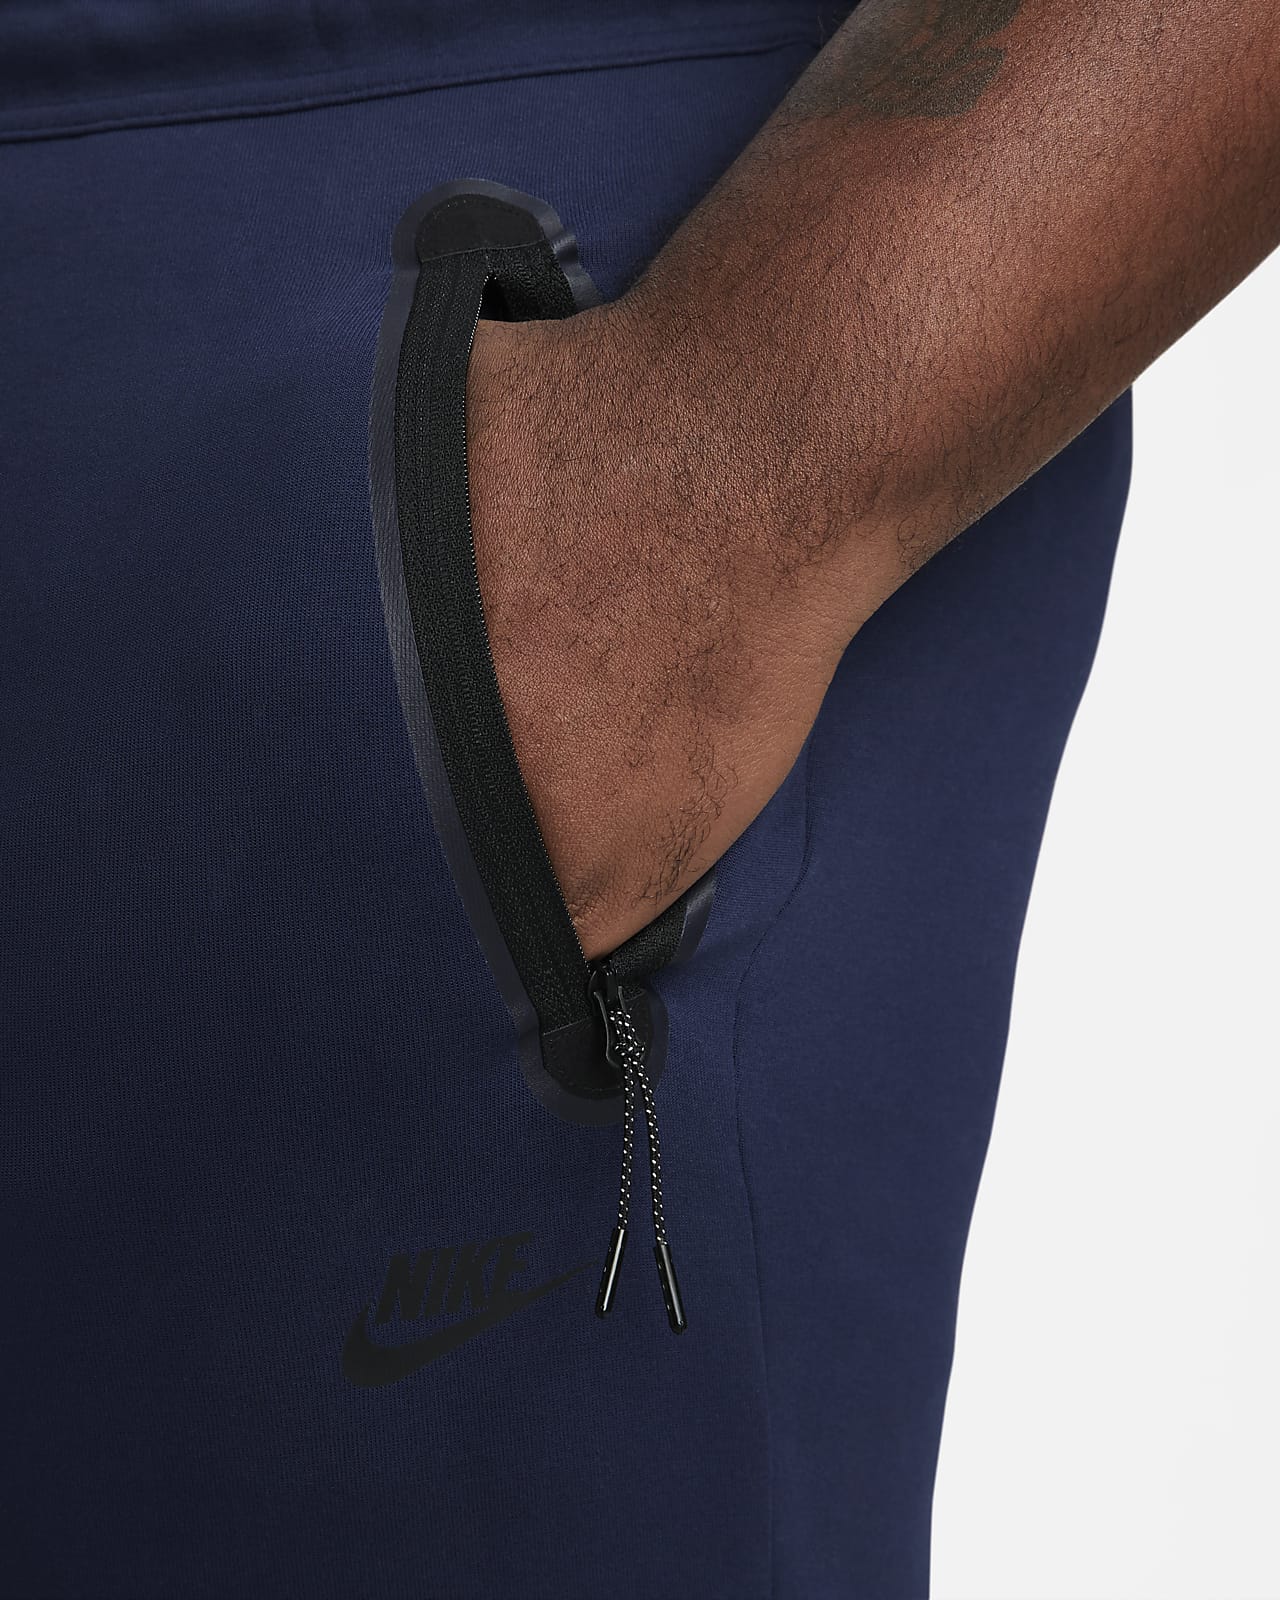 Nike Sportswear Tech Fleece Men's Pants